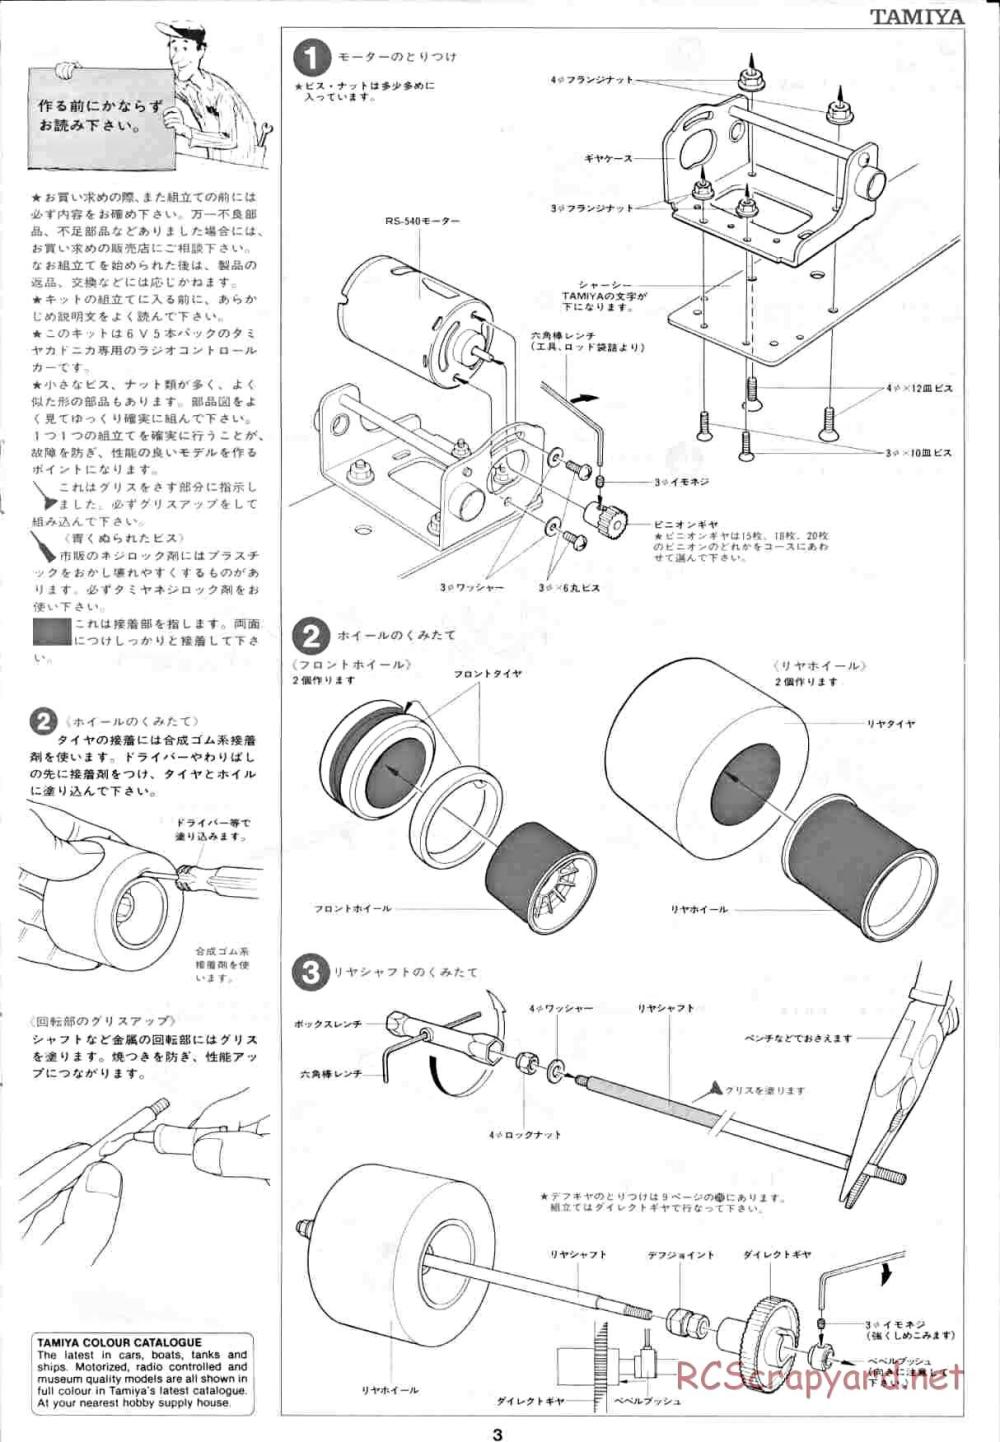 Tamiya - Honda F2 (CS) - 58030 - Manual - Page 3